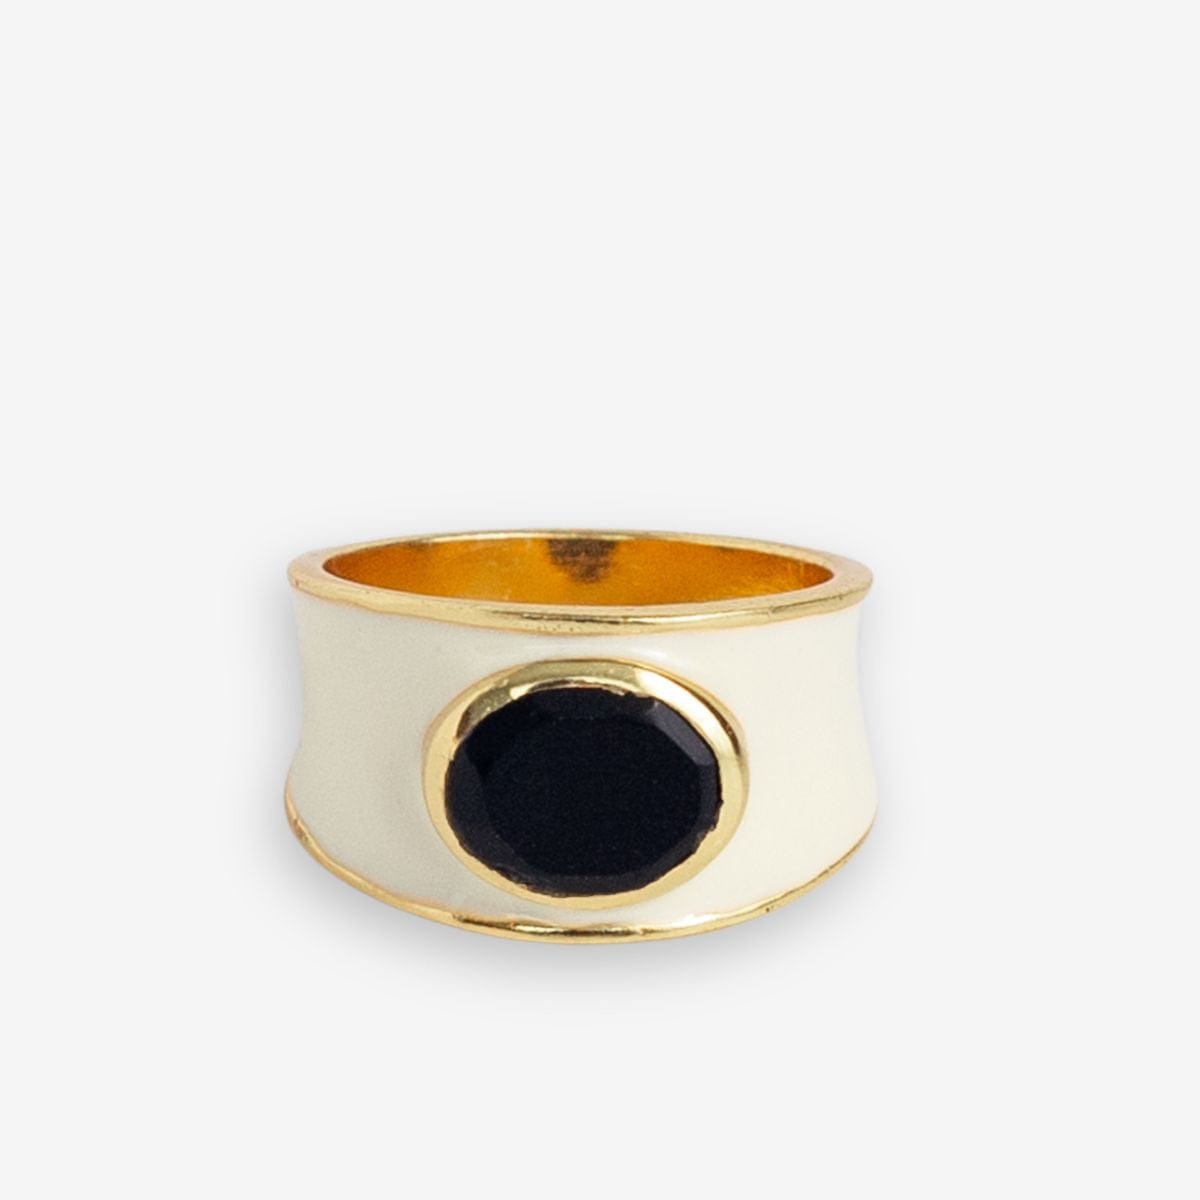 Hazel Oval Stone With Enamel Band Ring Ivory/Black Ivory/Black- Size 7 RING